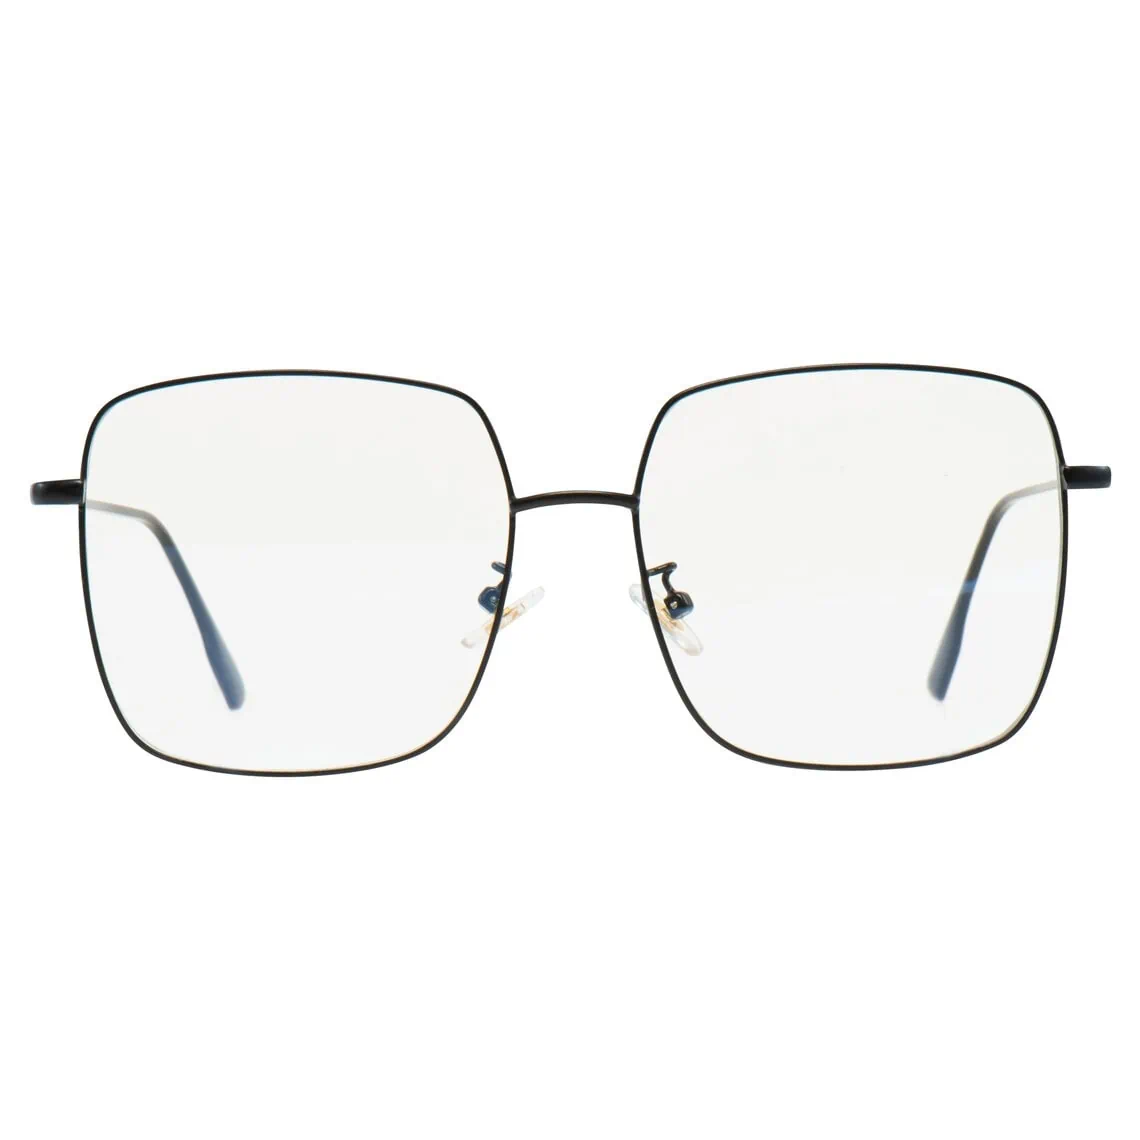 Packshots van brillen, productfotografie doorNorbert